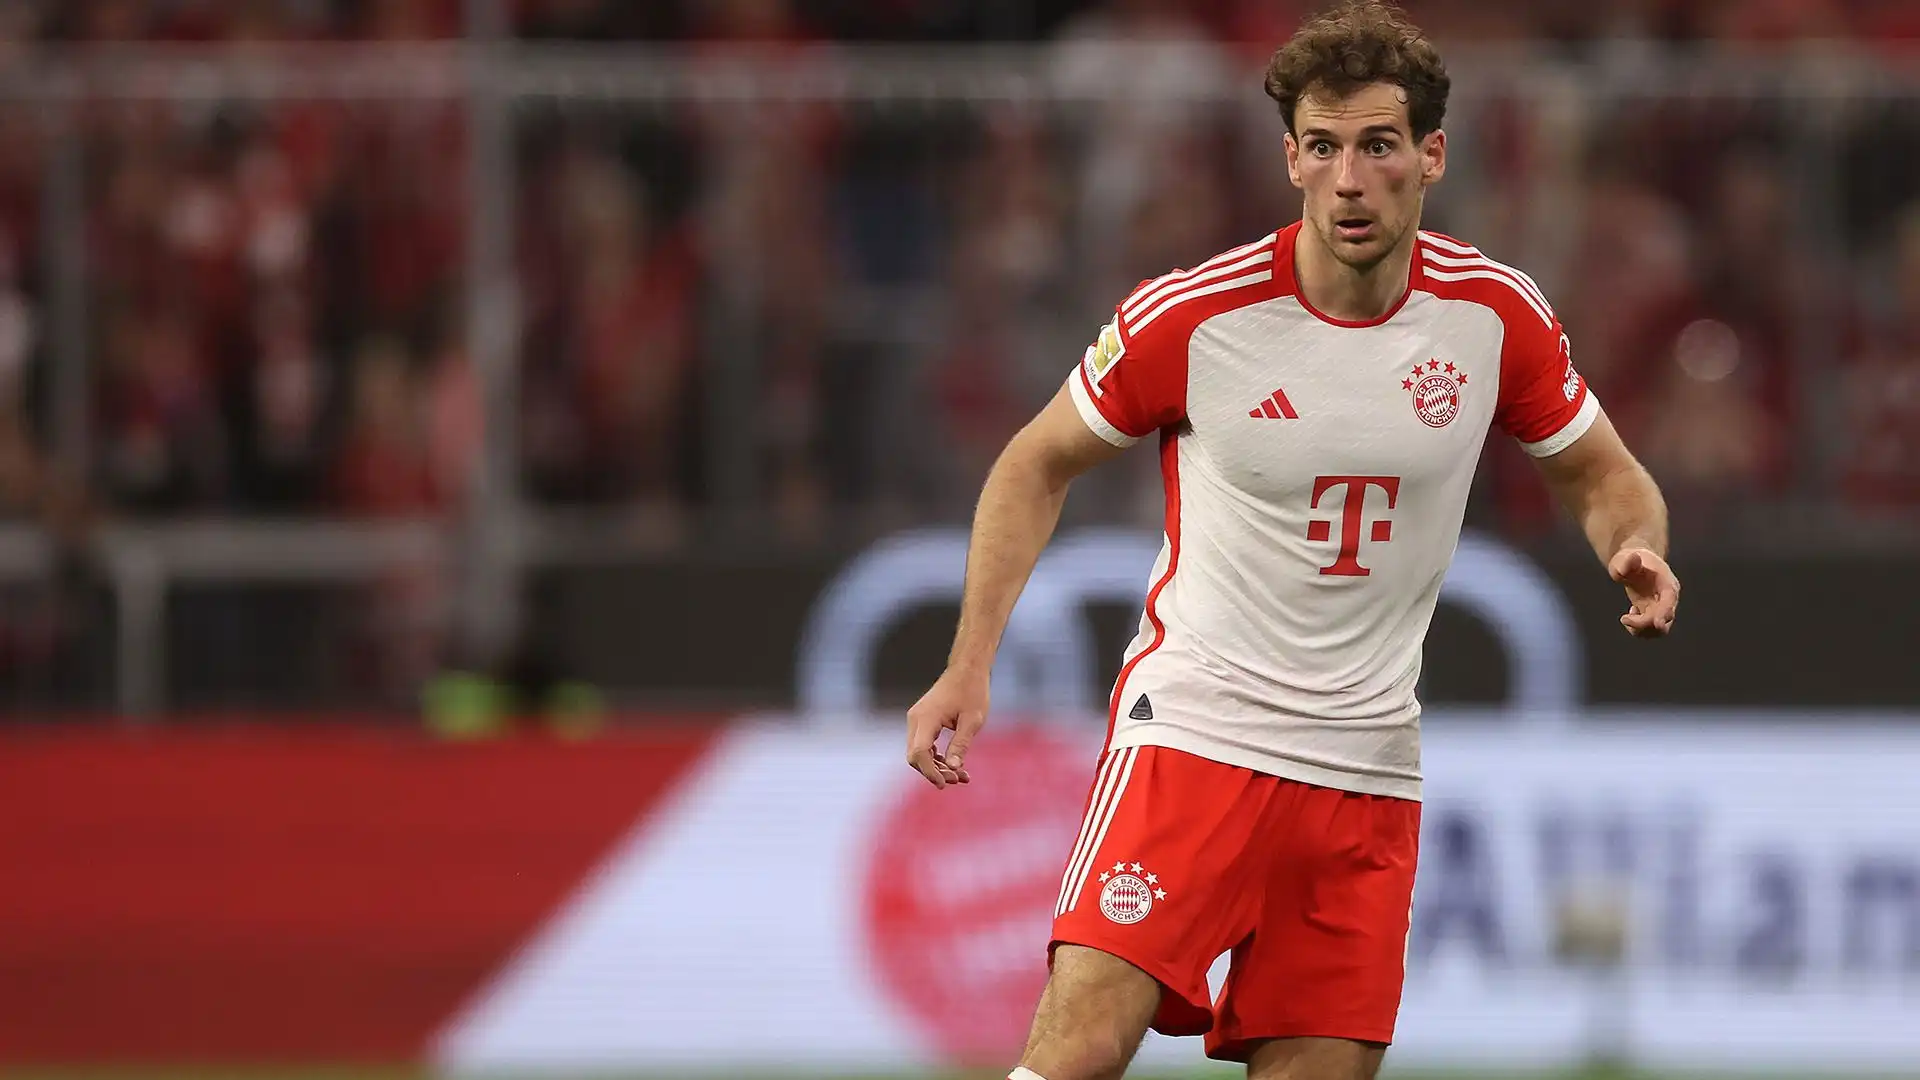 Goretzka in alcune recenti interviste ha rivelato il suo desiderio di voler restare ancora al Bayern Monaco